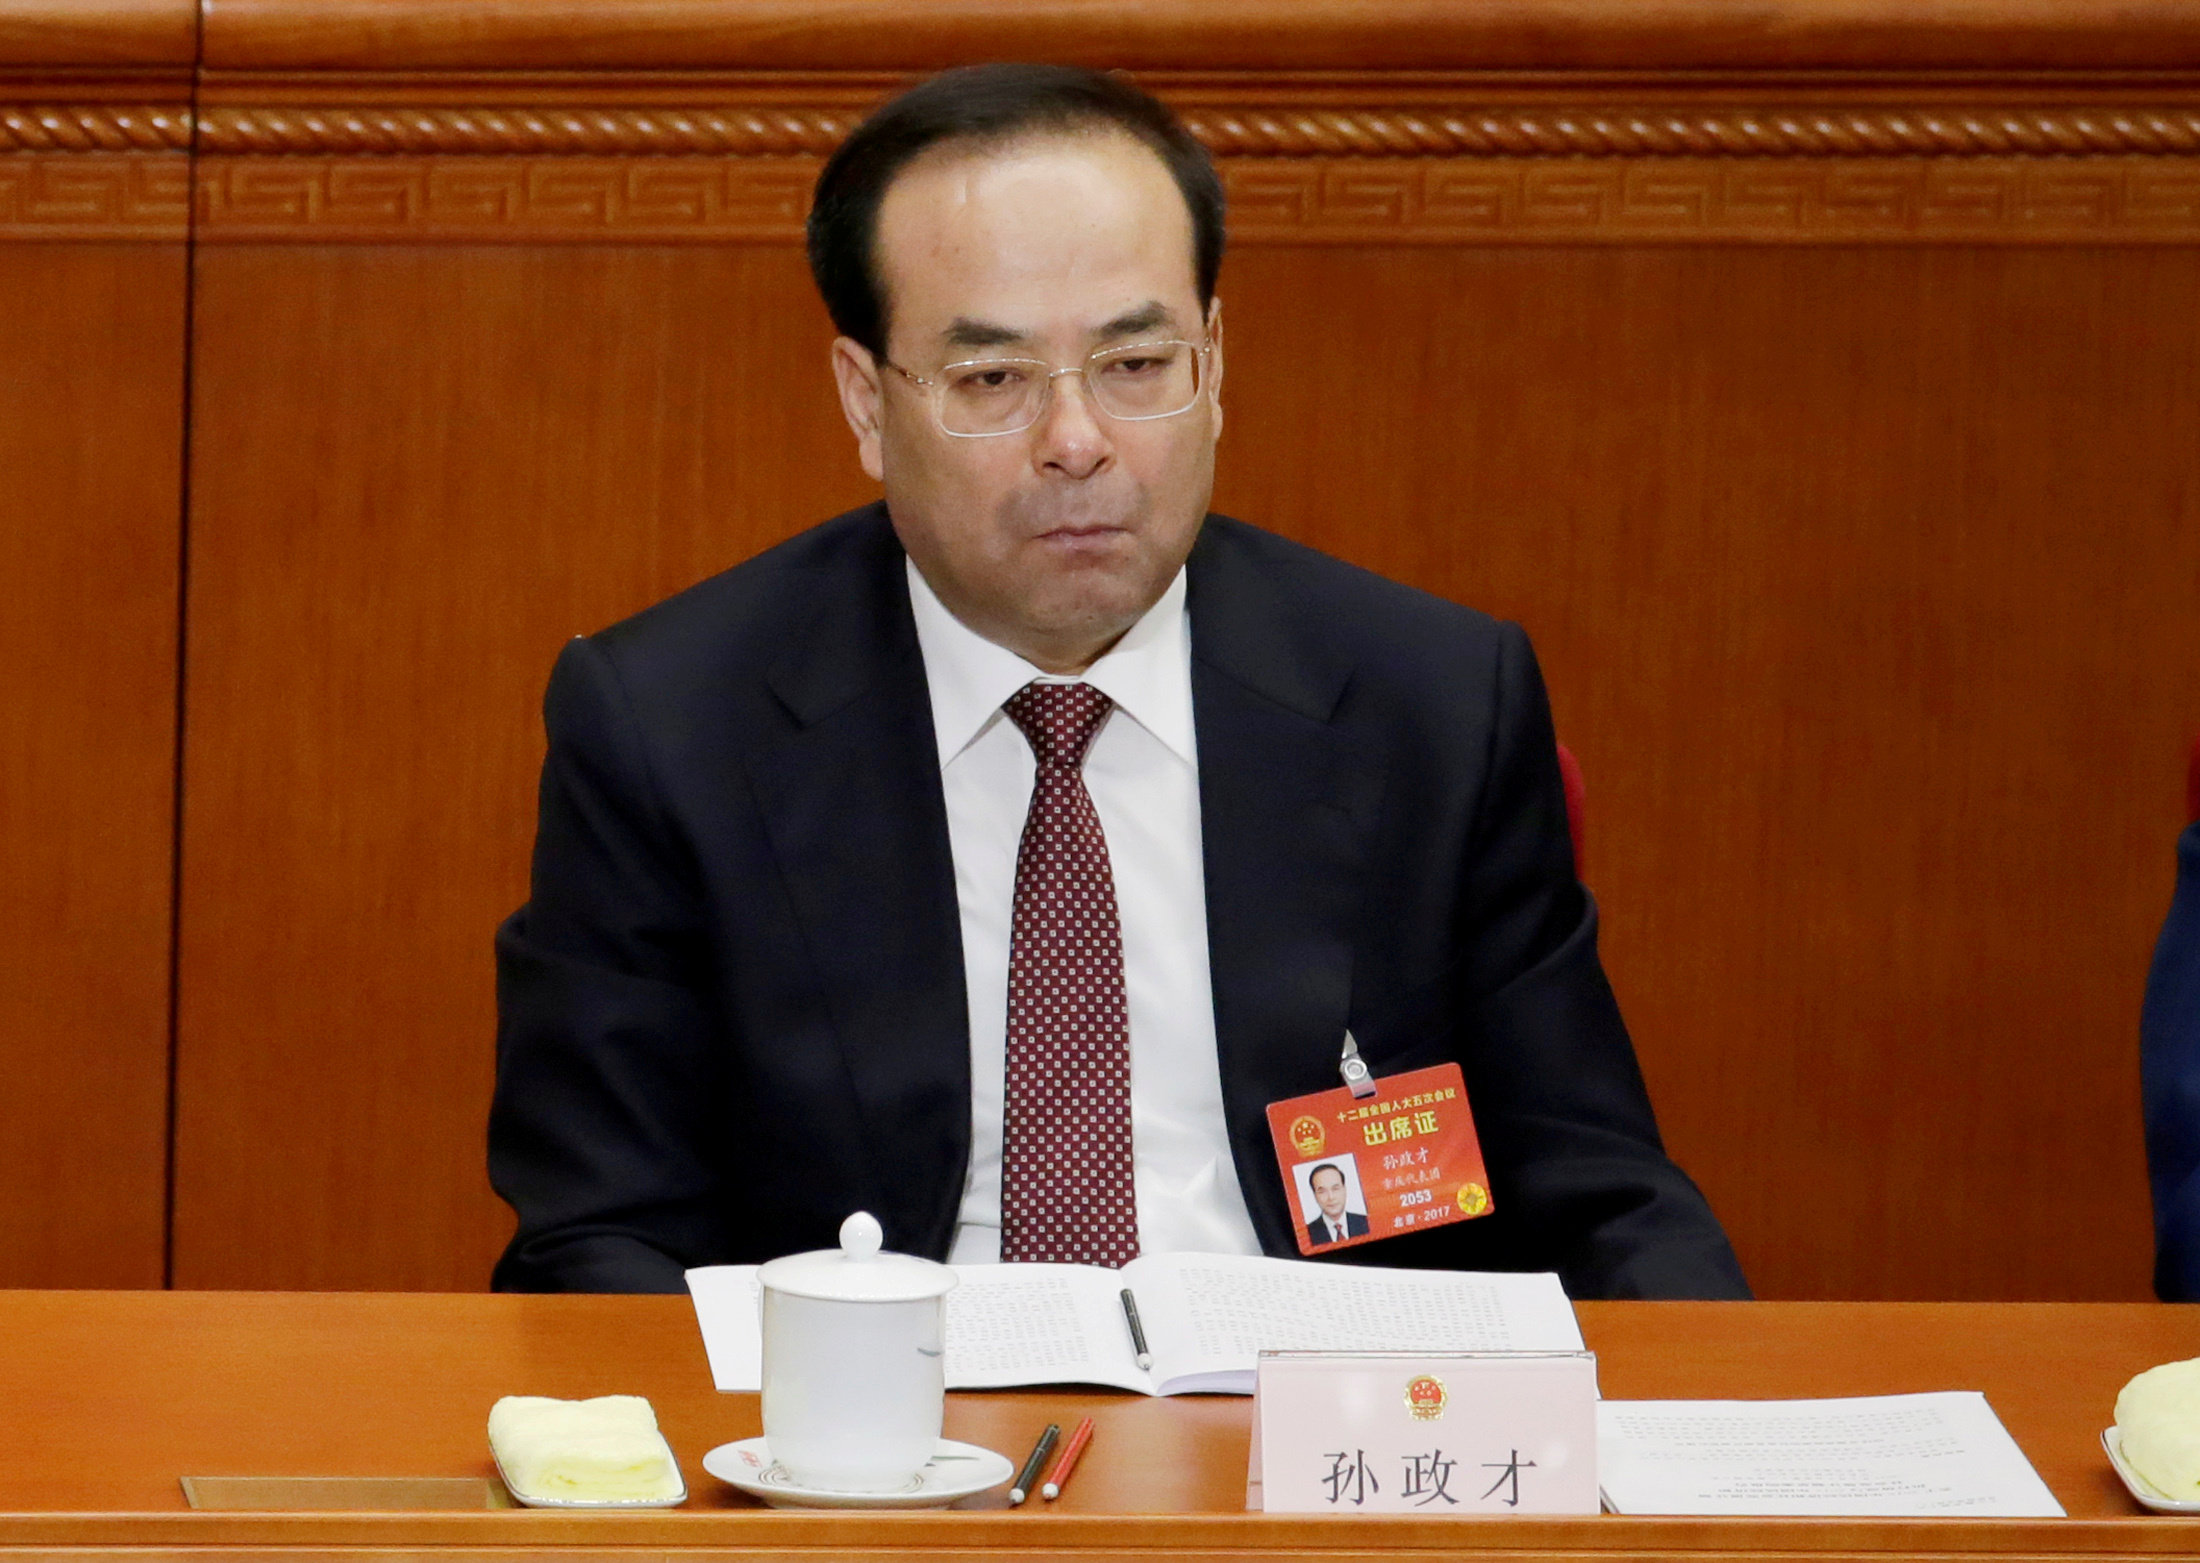 Condenan cadena perpetua alto funcionario chino aceptar sobornos